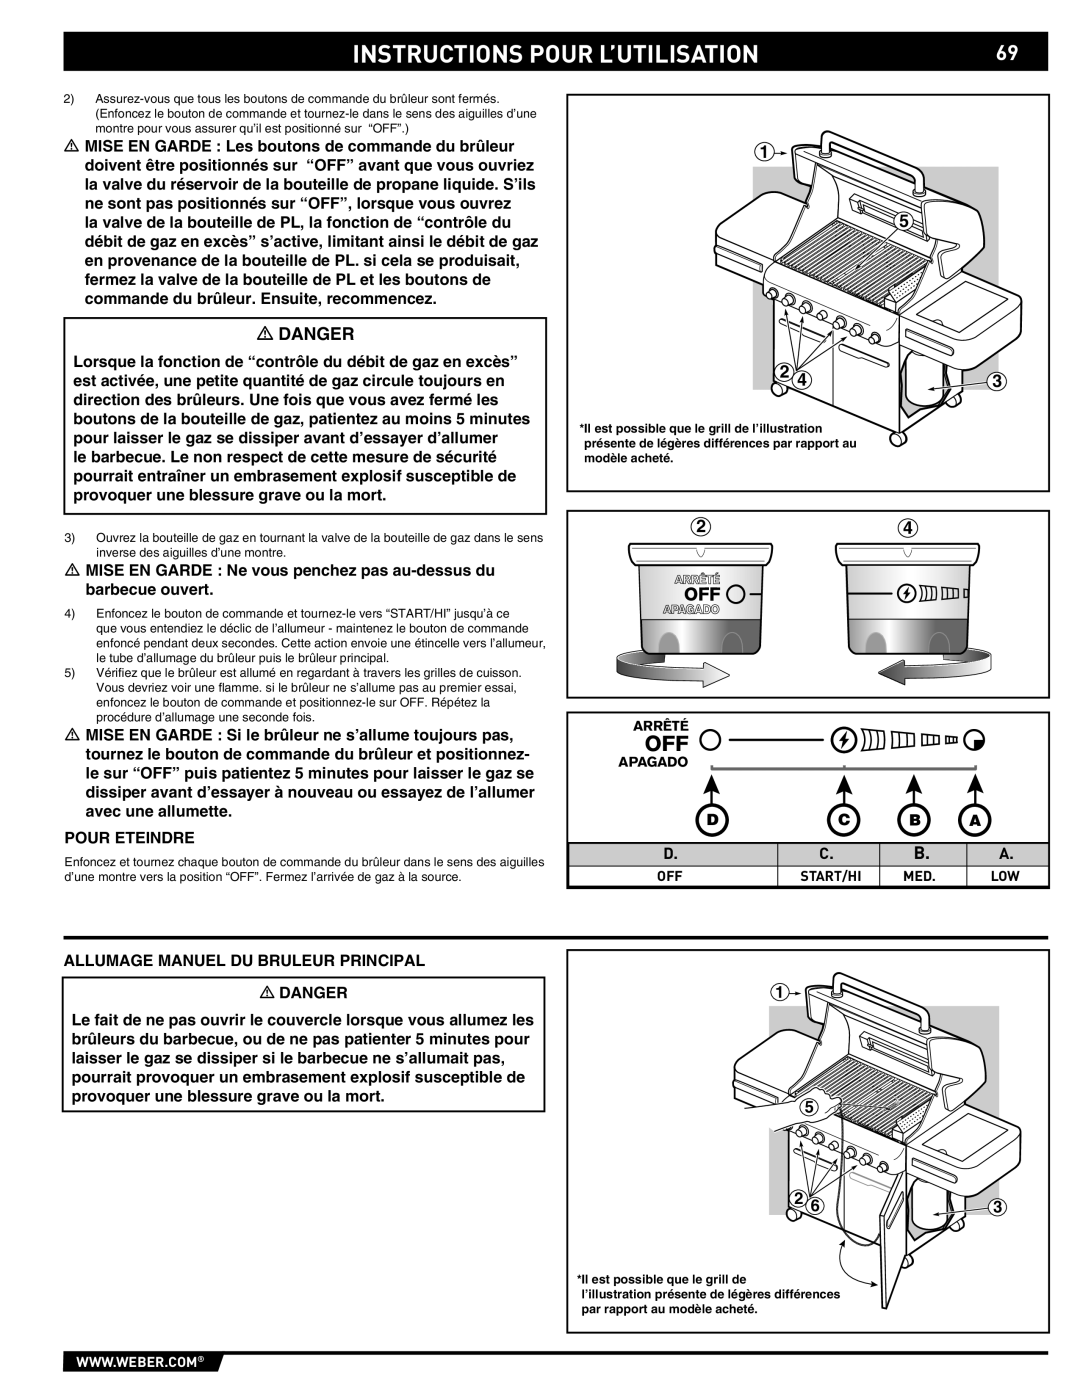 Summit 89190 manual Instructions Pour L’Utilisation, Danger, D C B A 